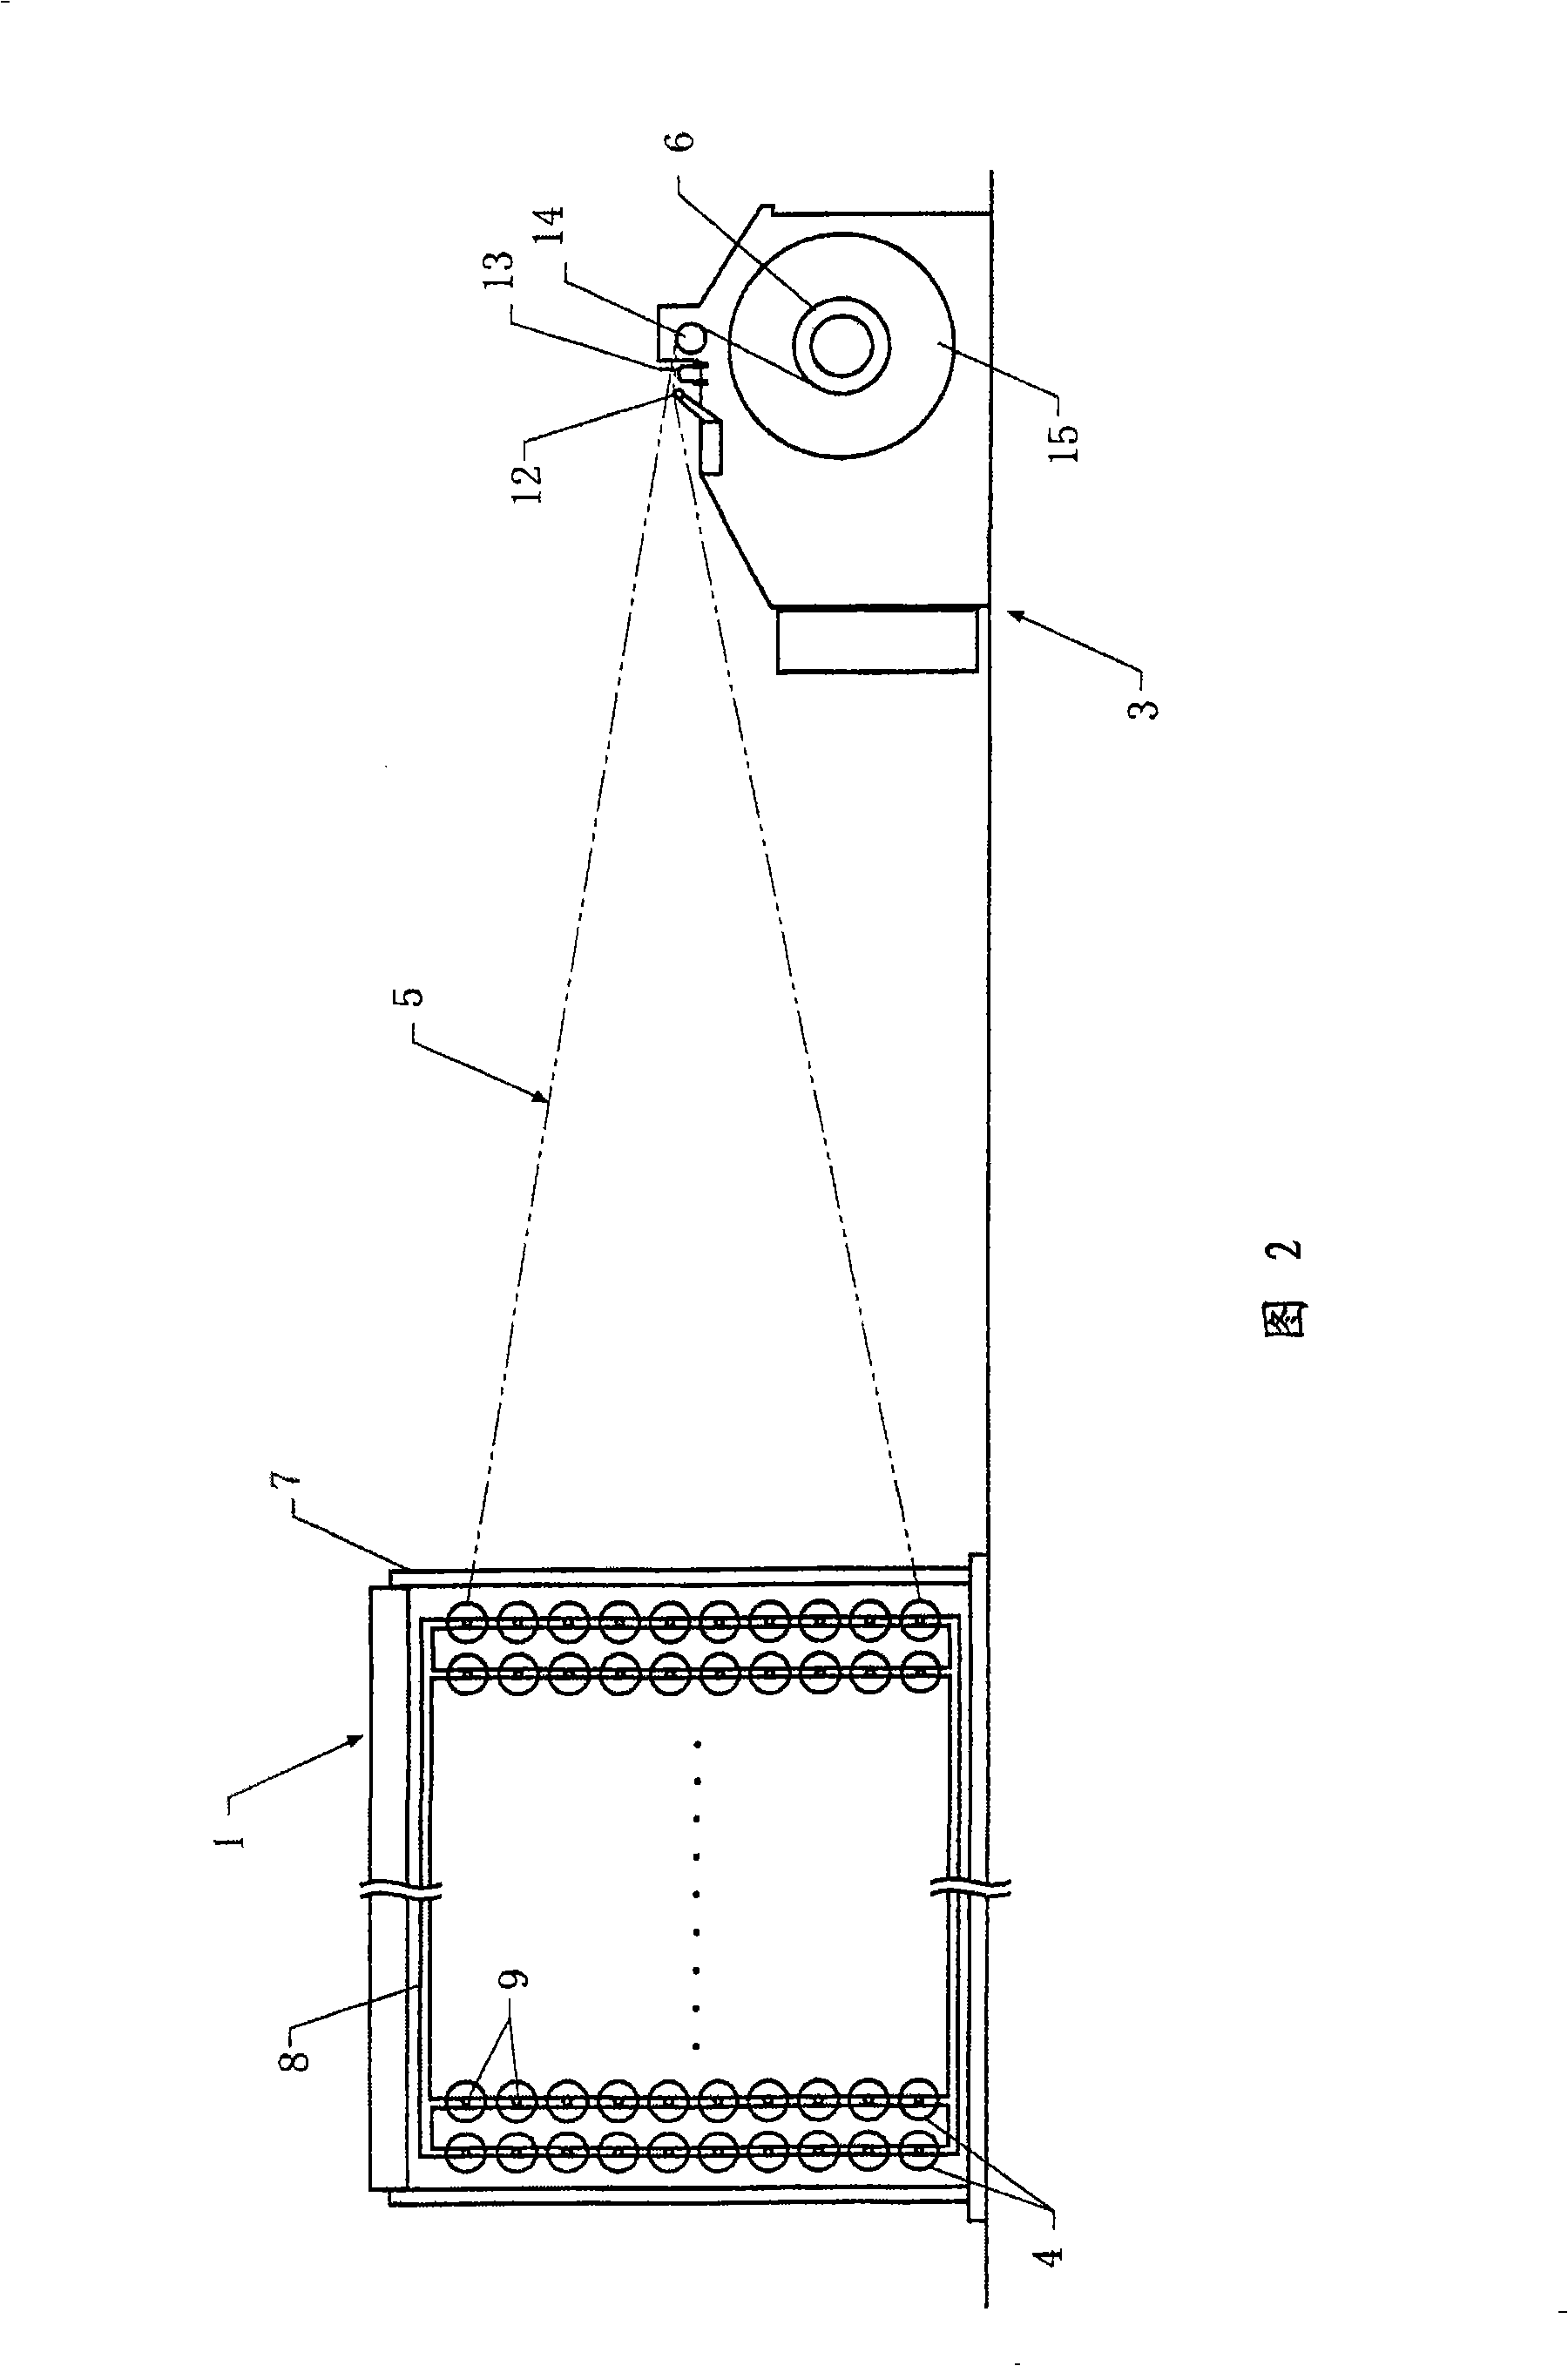 Beaming method of warp shaft